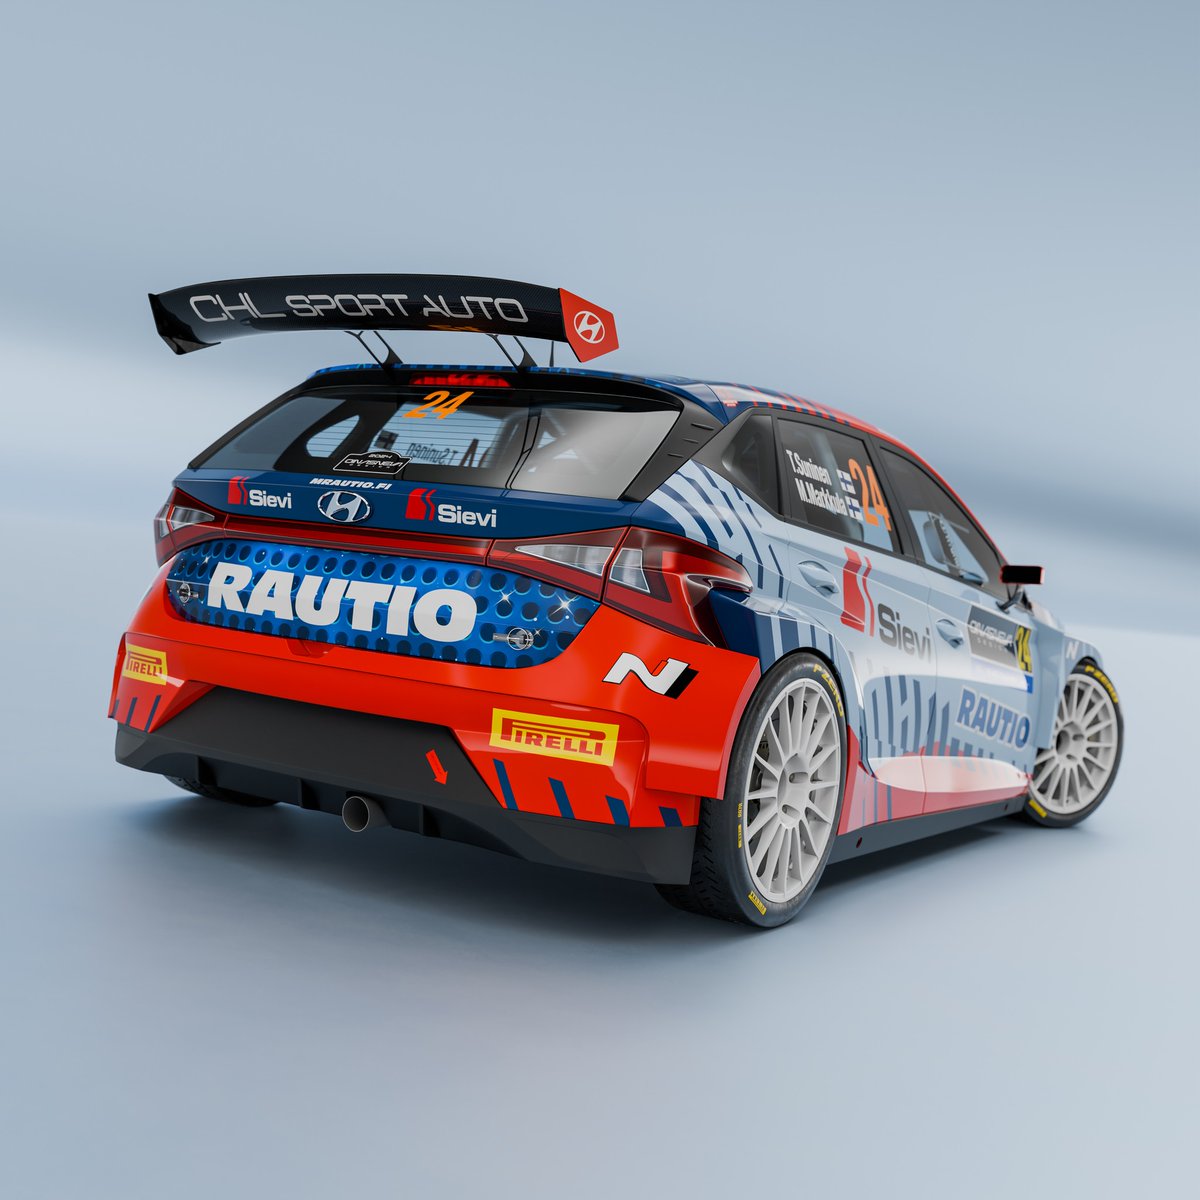 WRC 
Decoração do Hyundai i20 rally2 da Teemu Suninen Racing para a campanha 2024 no WRC2, que arranca no Rally de Portugal.
Fotos: Teemu Suninen Racing
#rallyface2013 #Rally2 #rallycar #rallyracing #wrcofficial #wrcrally #portugal #ralideportugal  #hyundai #hyundaimotorsport